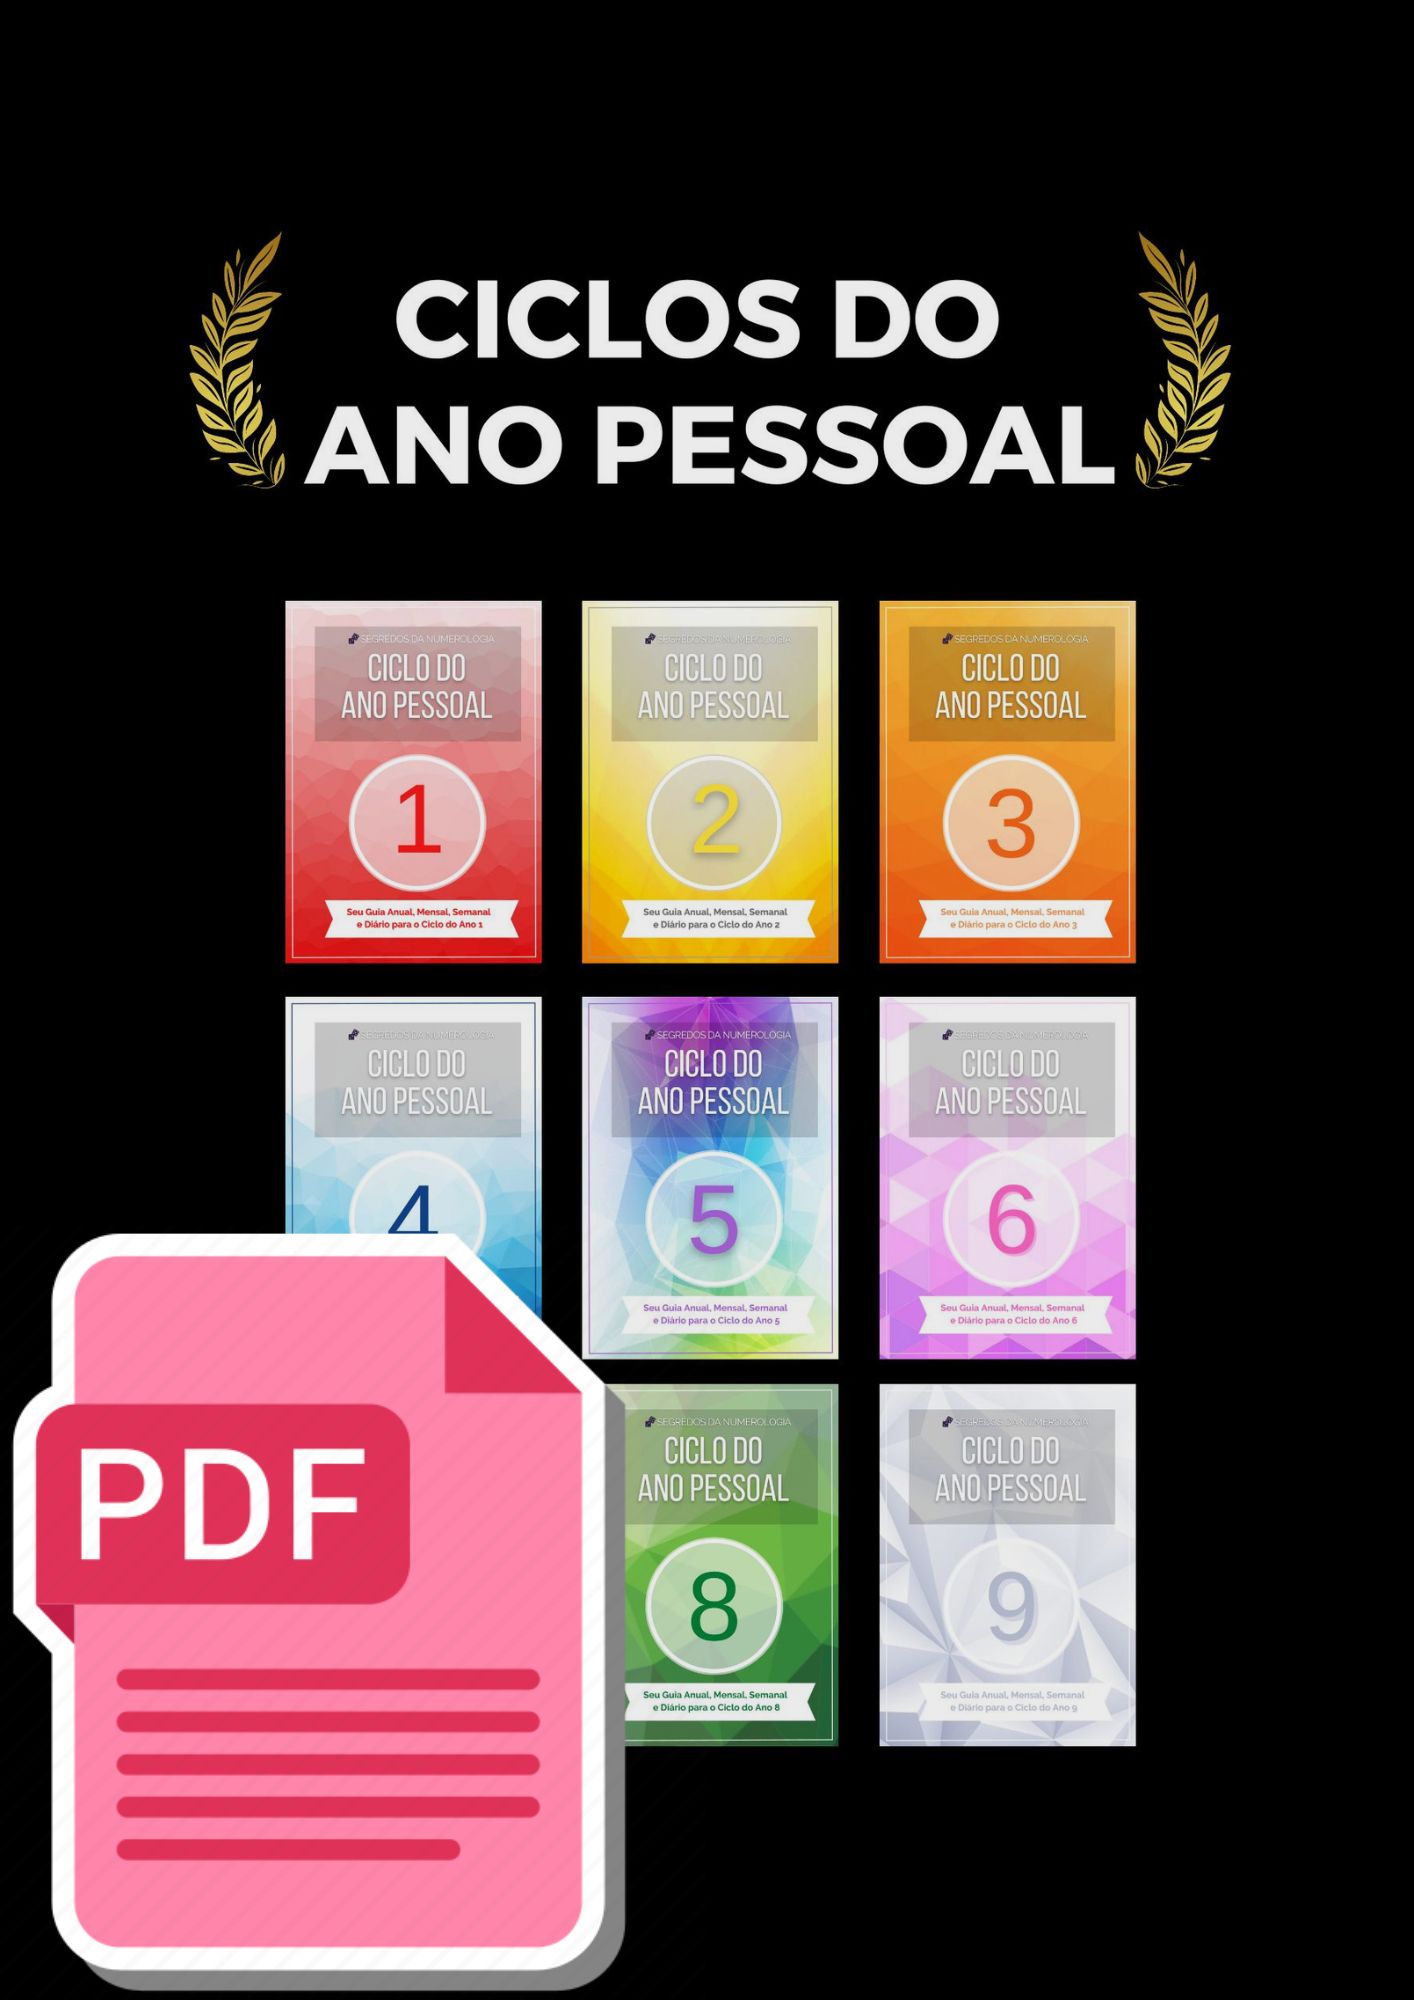 Ciclos do ano pessoal PDF